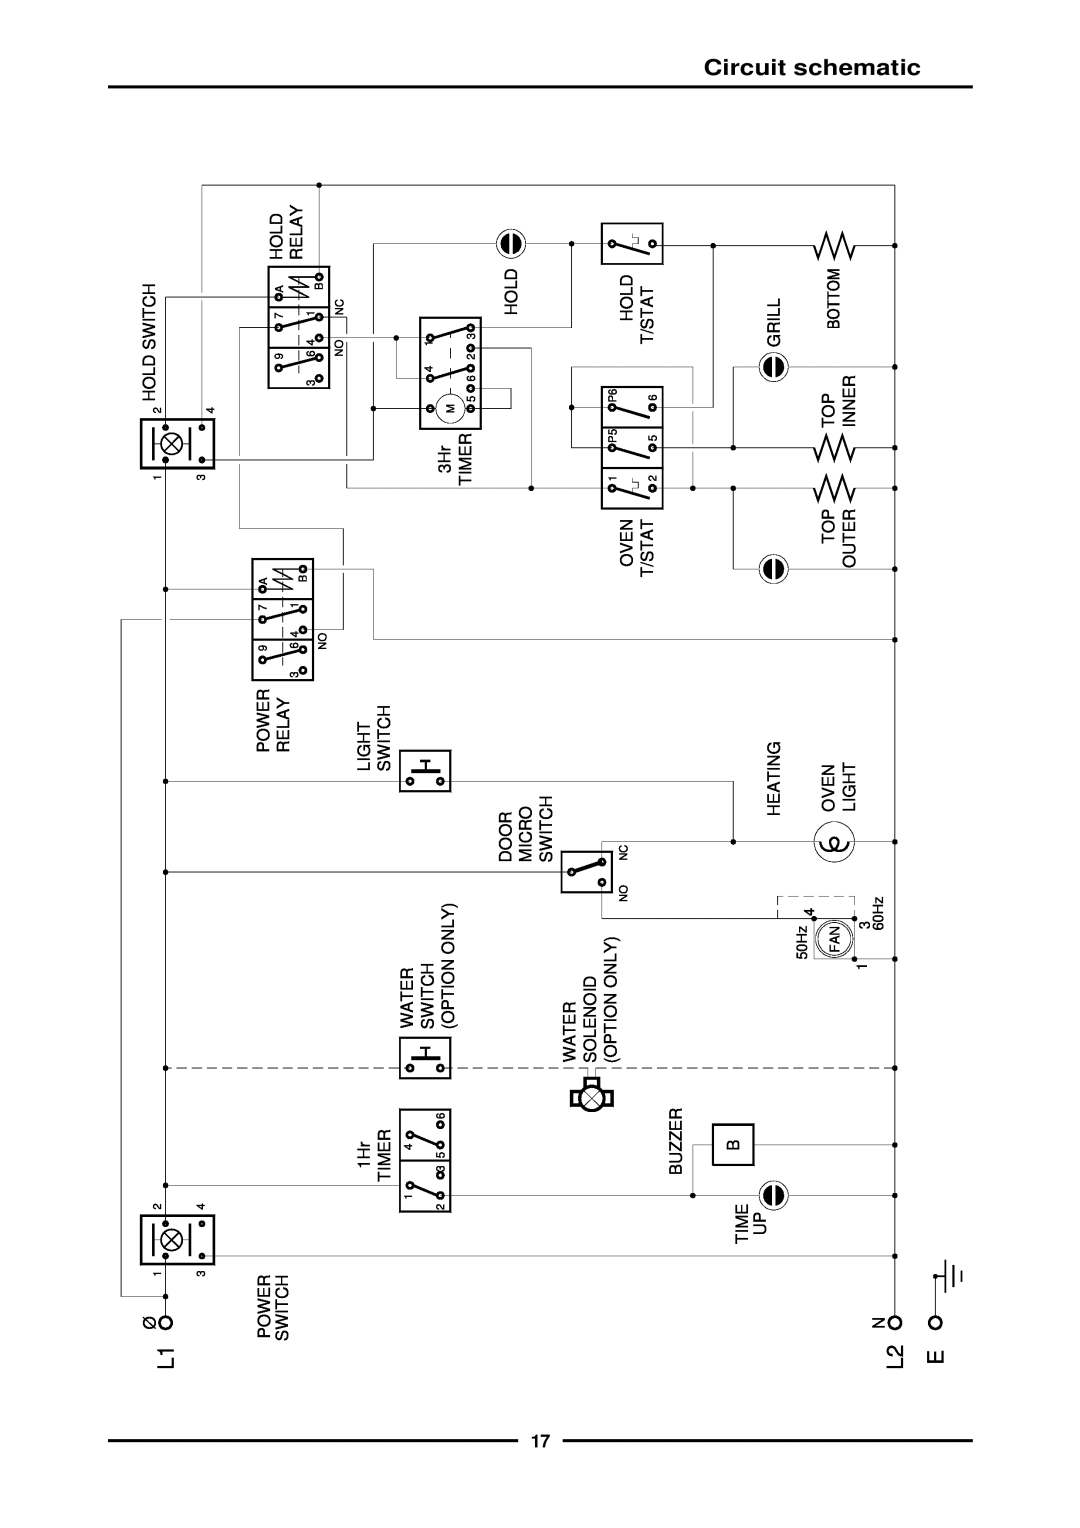 Moffat E311MS operation manual Circuit schematic 